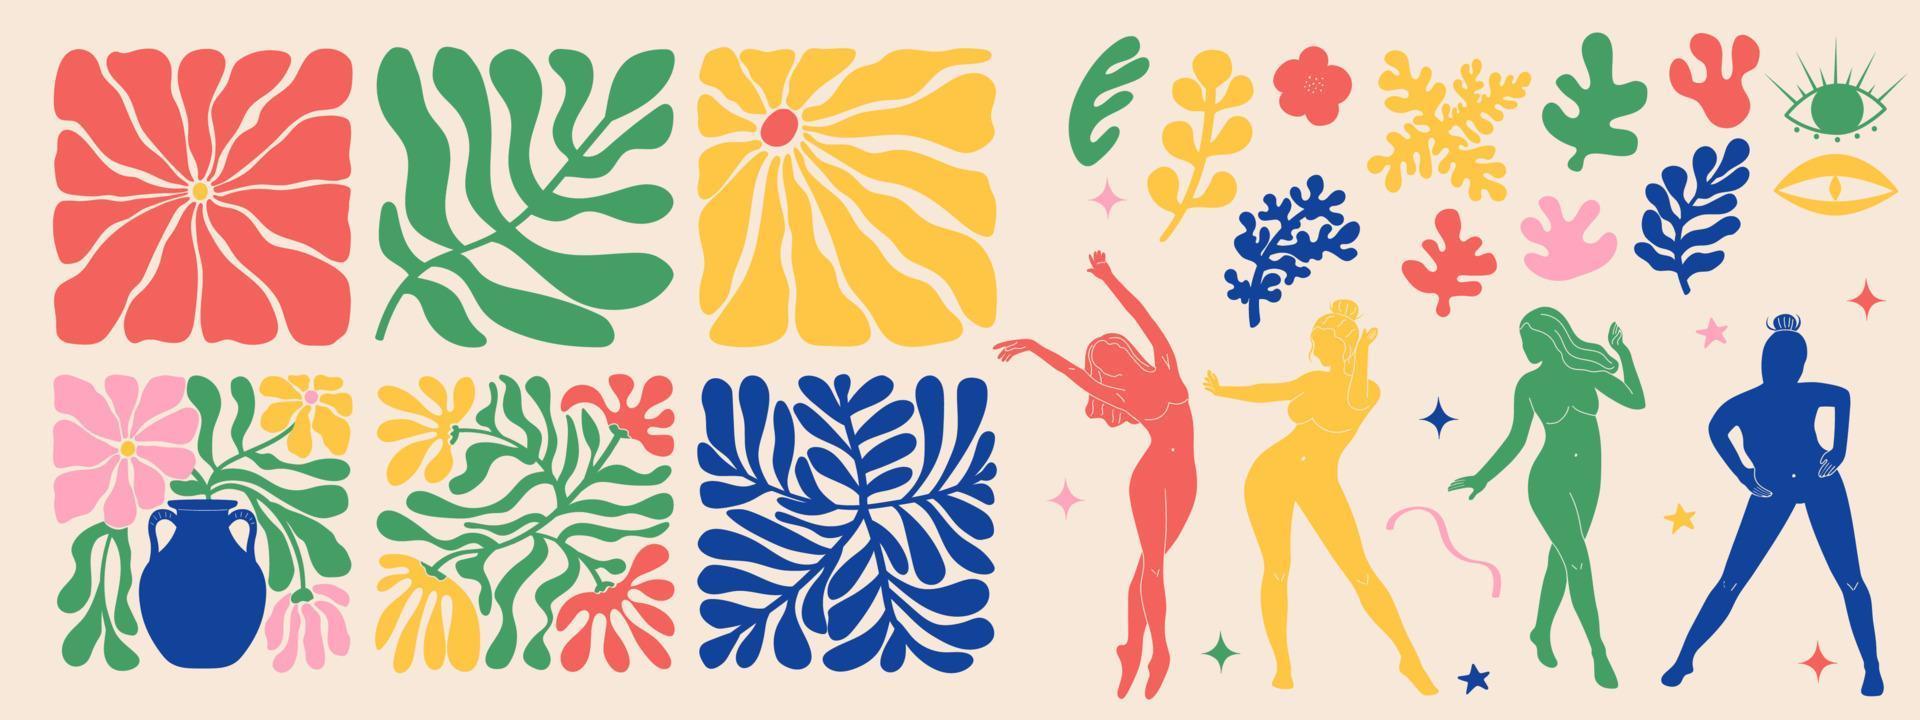 groovy rabisco e abstrato arte poster definir. Matisse aleatória orgânico formas e fêmea silhuetas dentro na moda retro anos 60 Anos 70 estilo. vetor